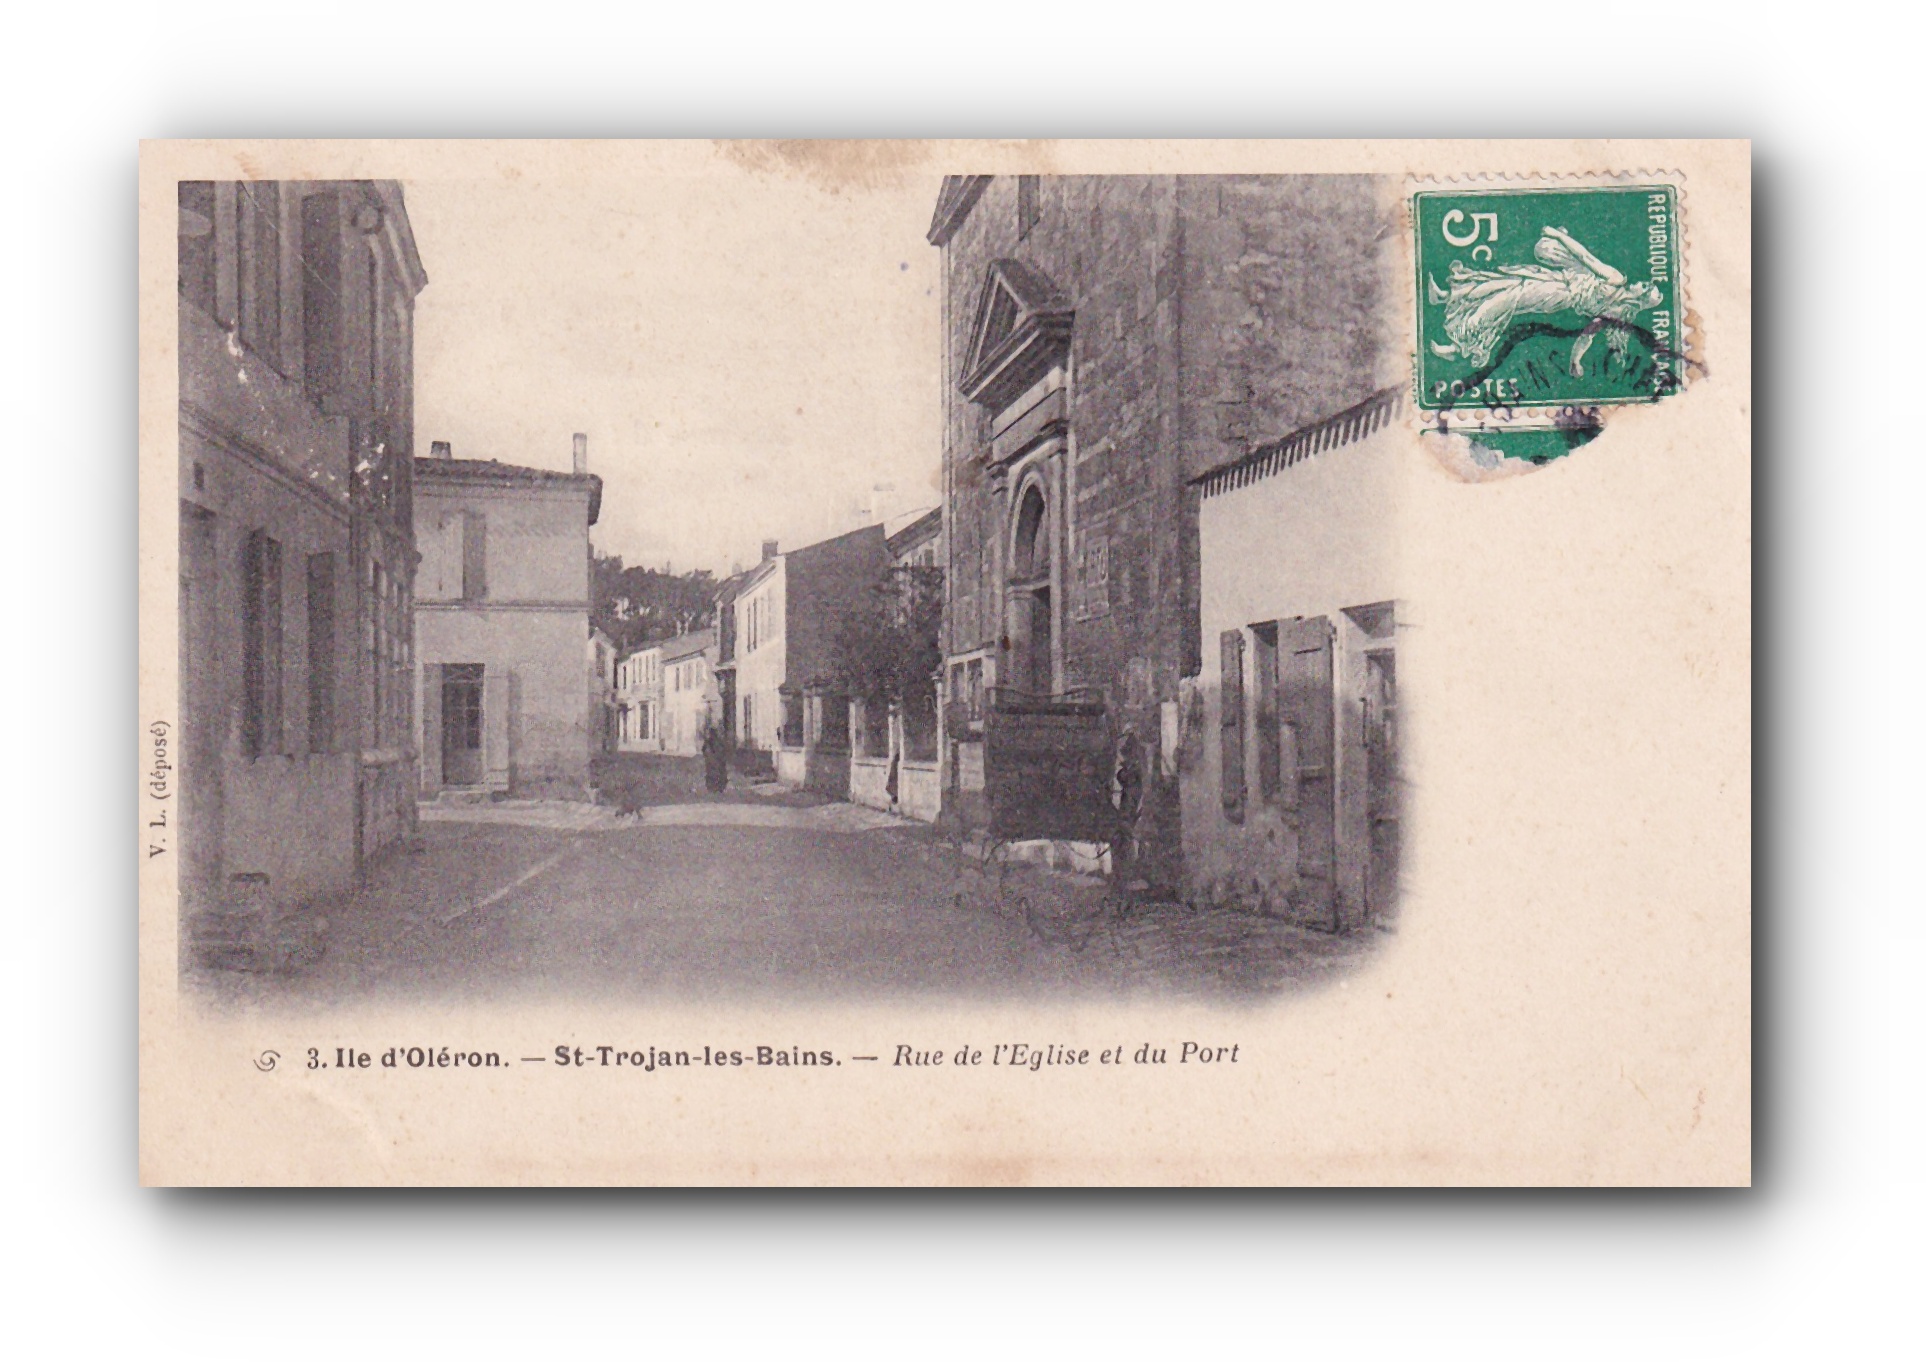 - St. Trojan - les - Bains - Rue de l'église et du Port - 1909 -